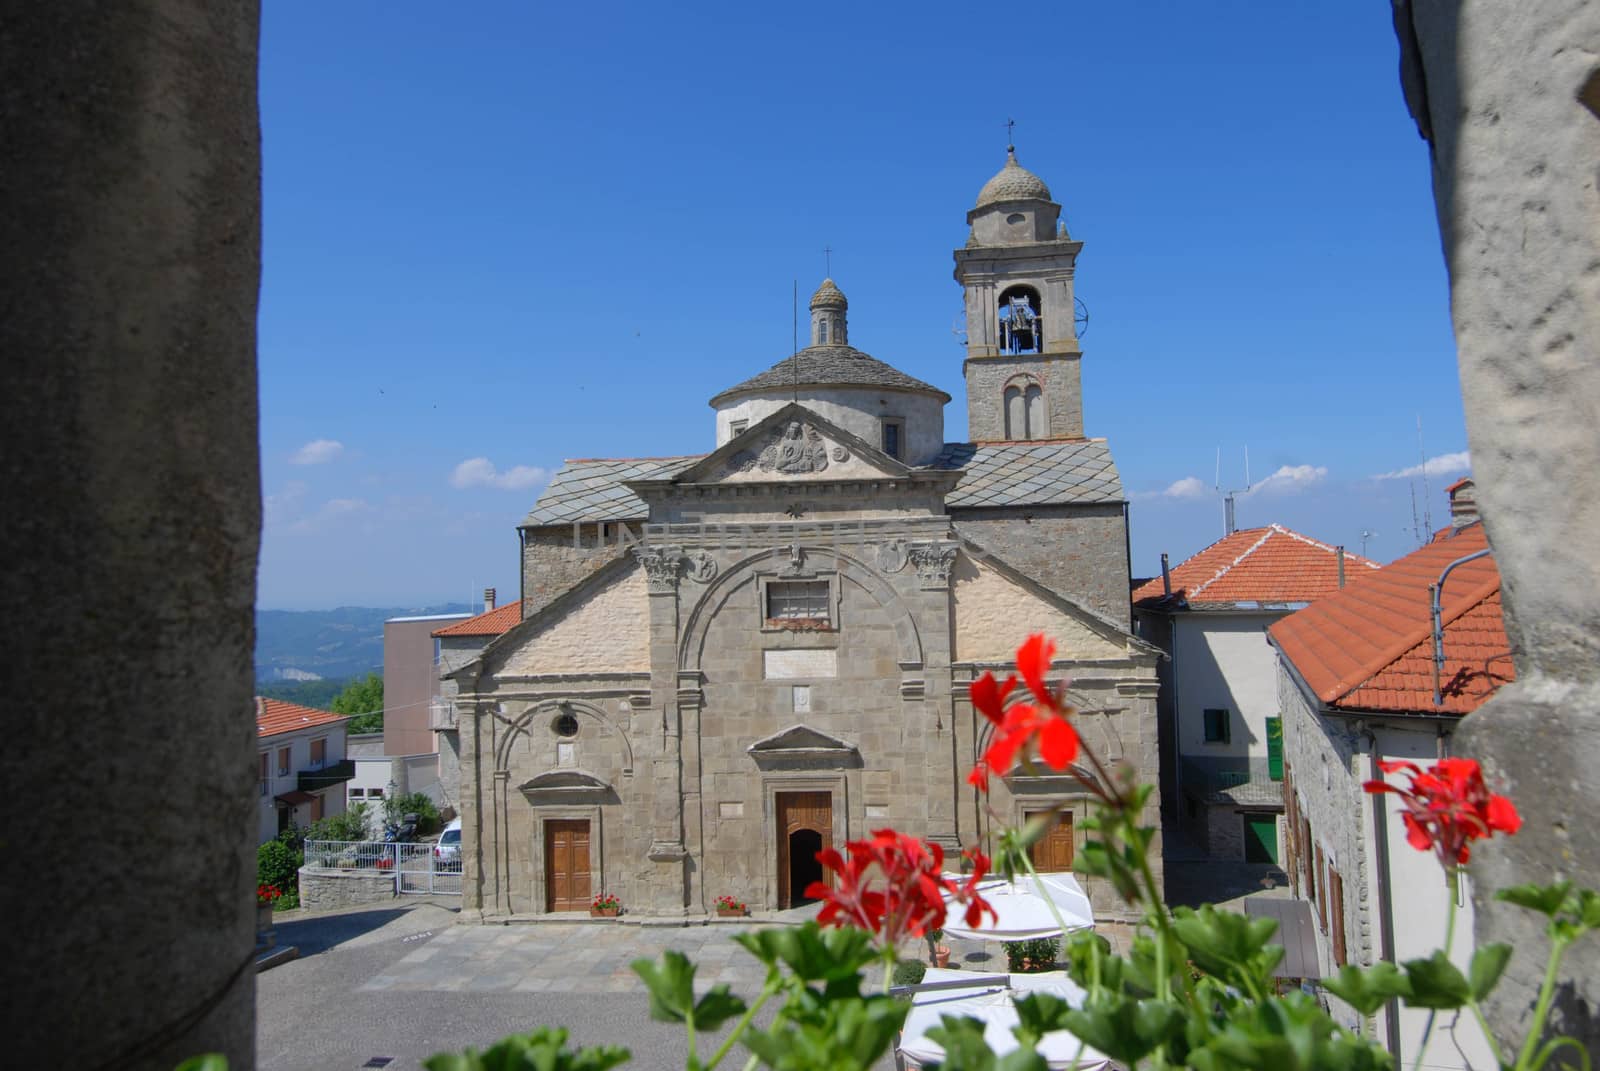 Church of Santa Maria Annunziata, Roccaverano - Italy by cosca